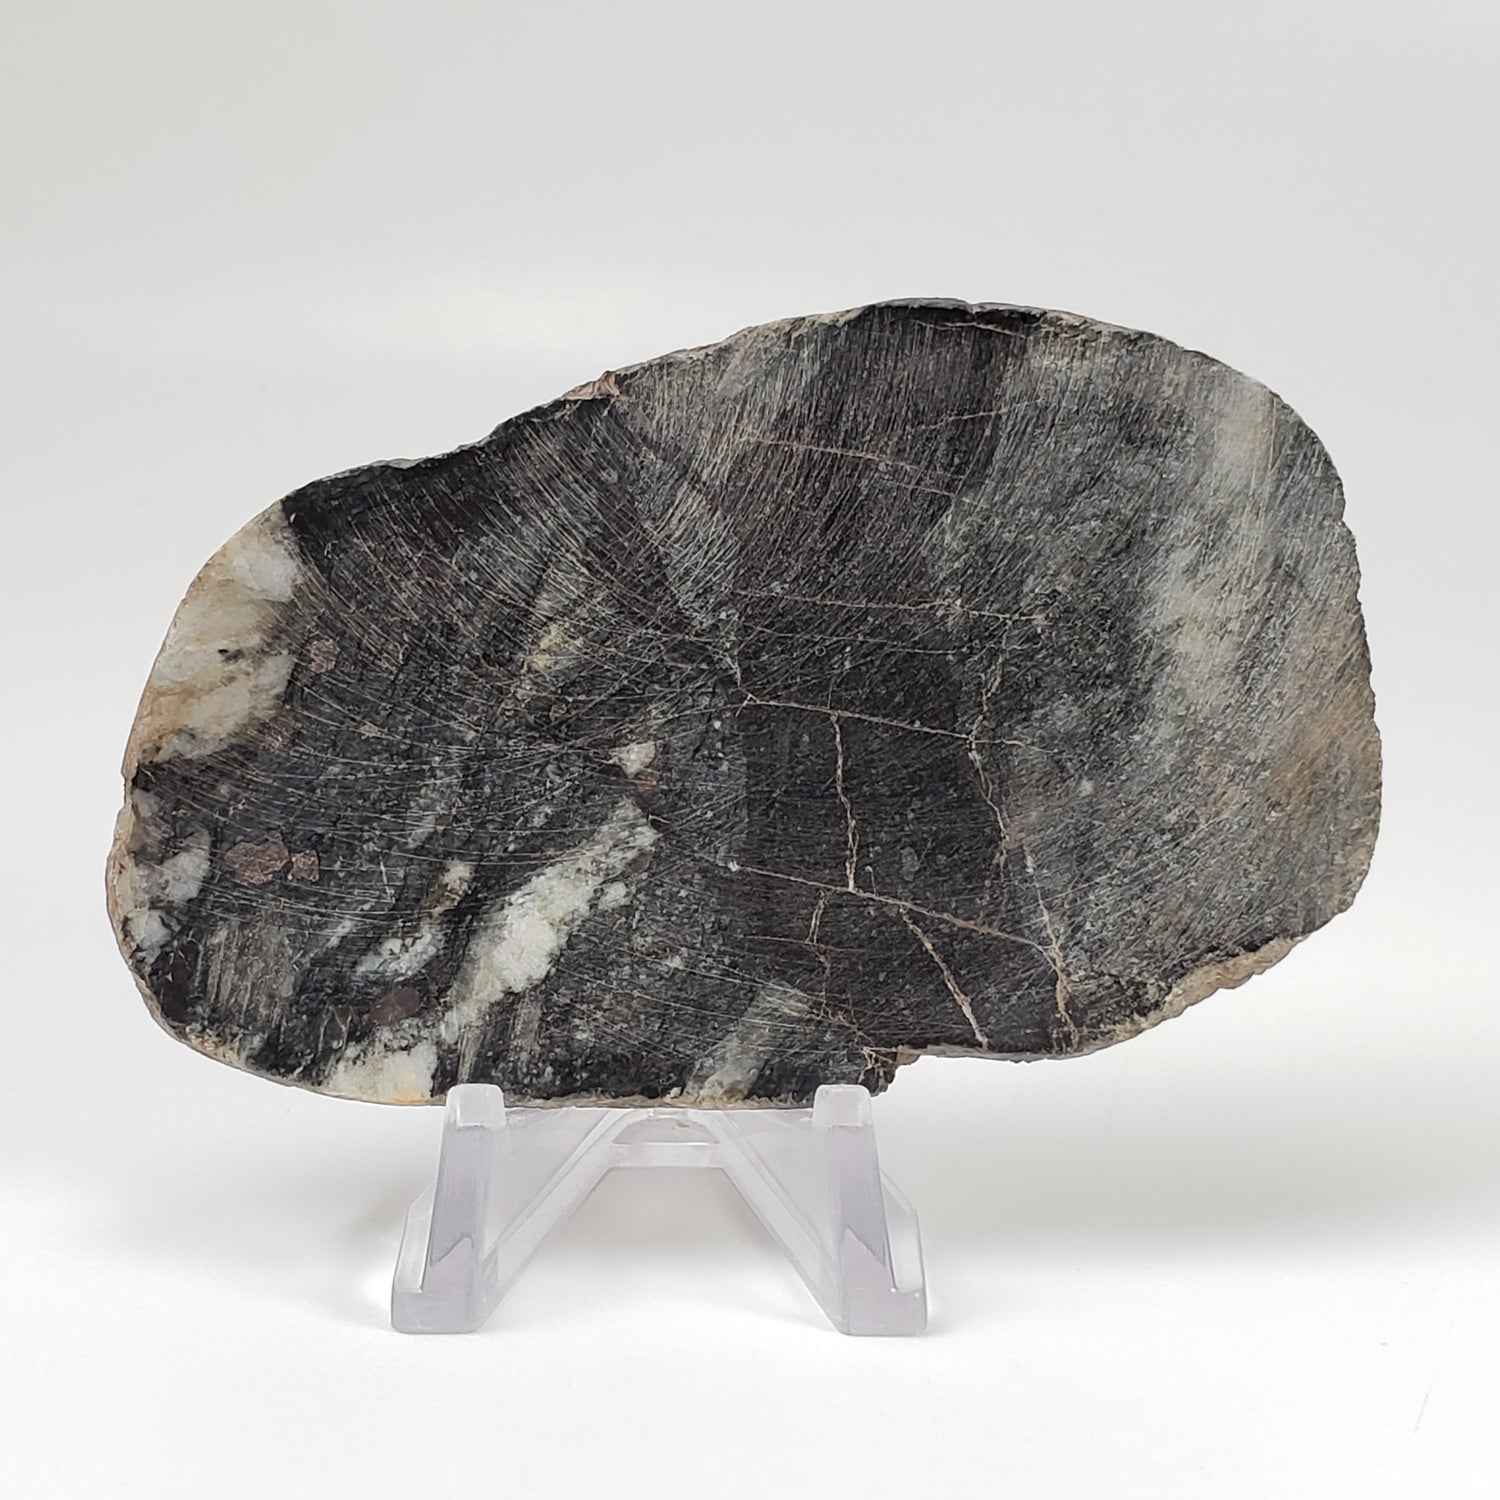 Dellenites Impact Melt Rock | 90.4 grams | HT Tagamite | Dellen Crater, Sweden | Canagem.com